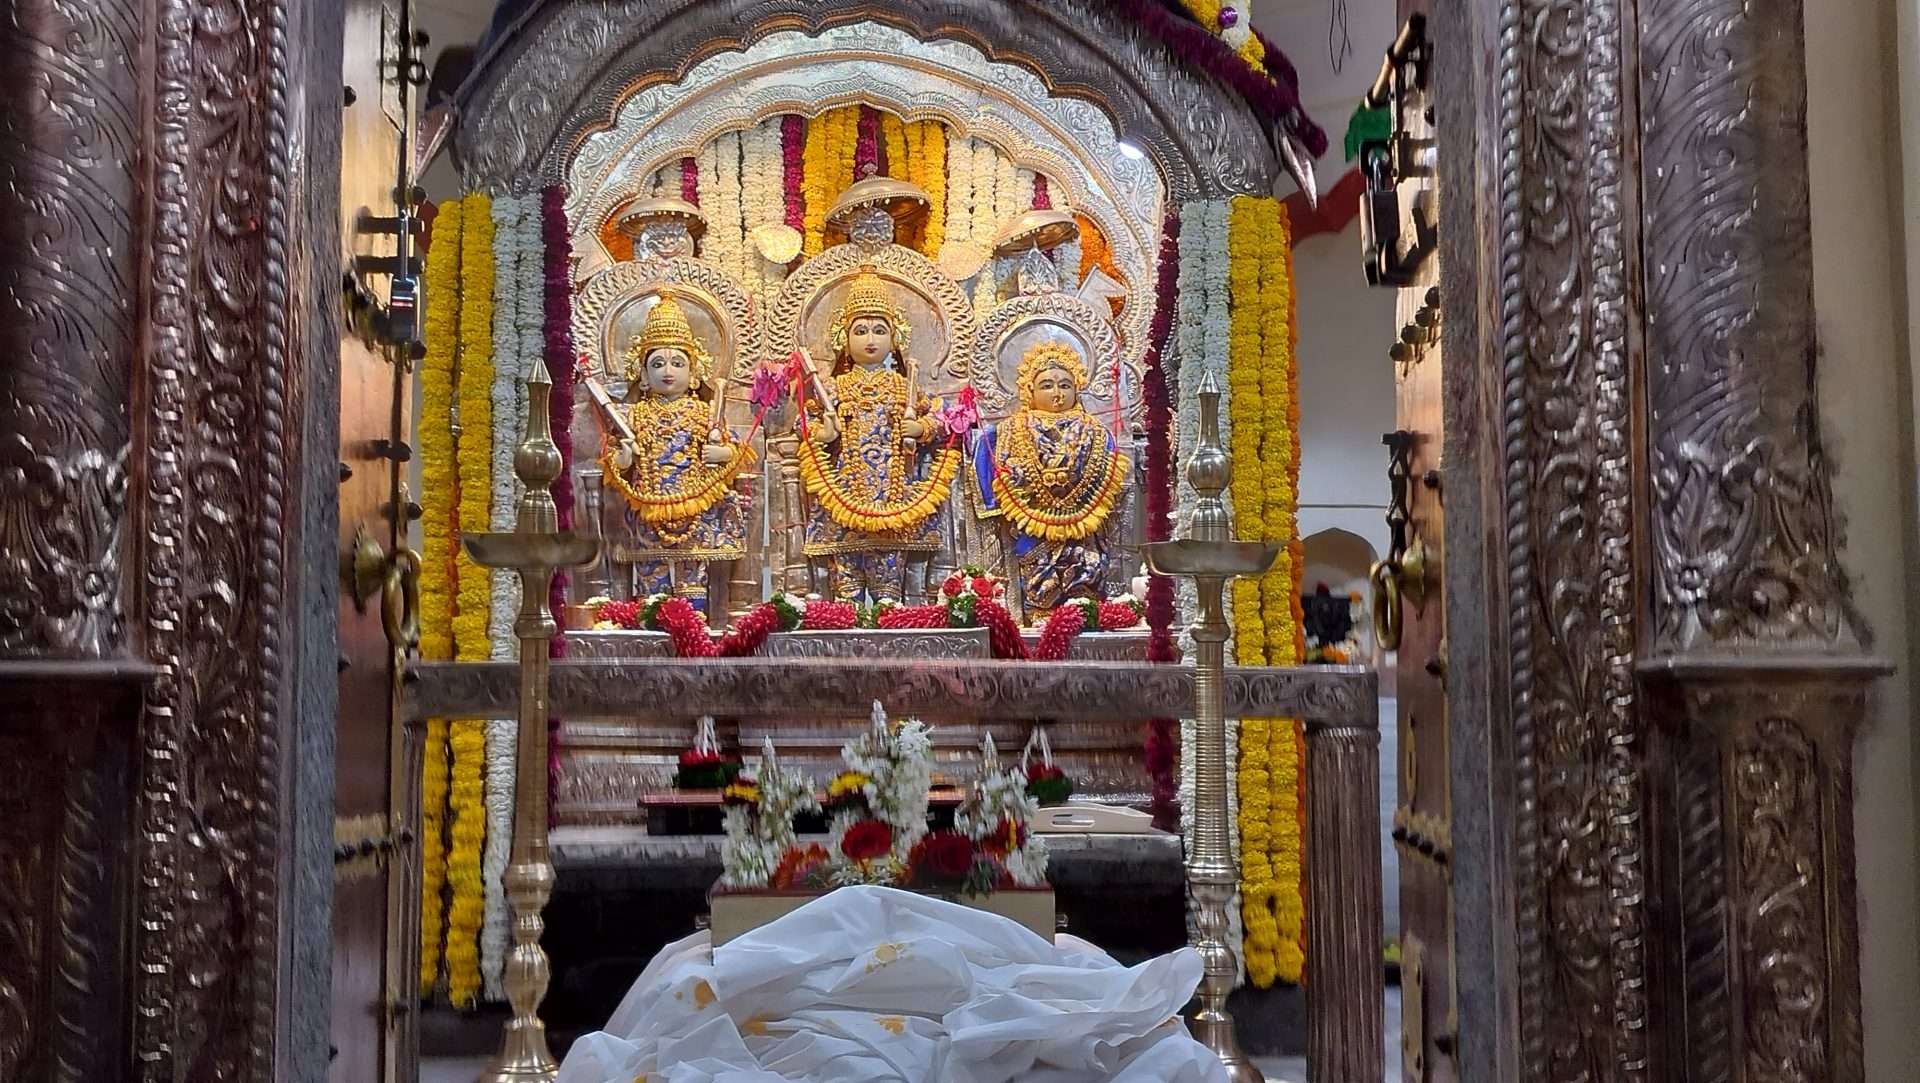 तुळशीबाग राम मंदिरात रामराज्याभिषेक सोहळा साजरा